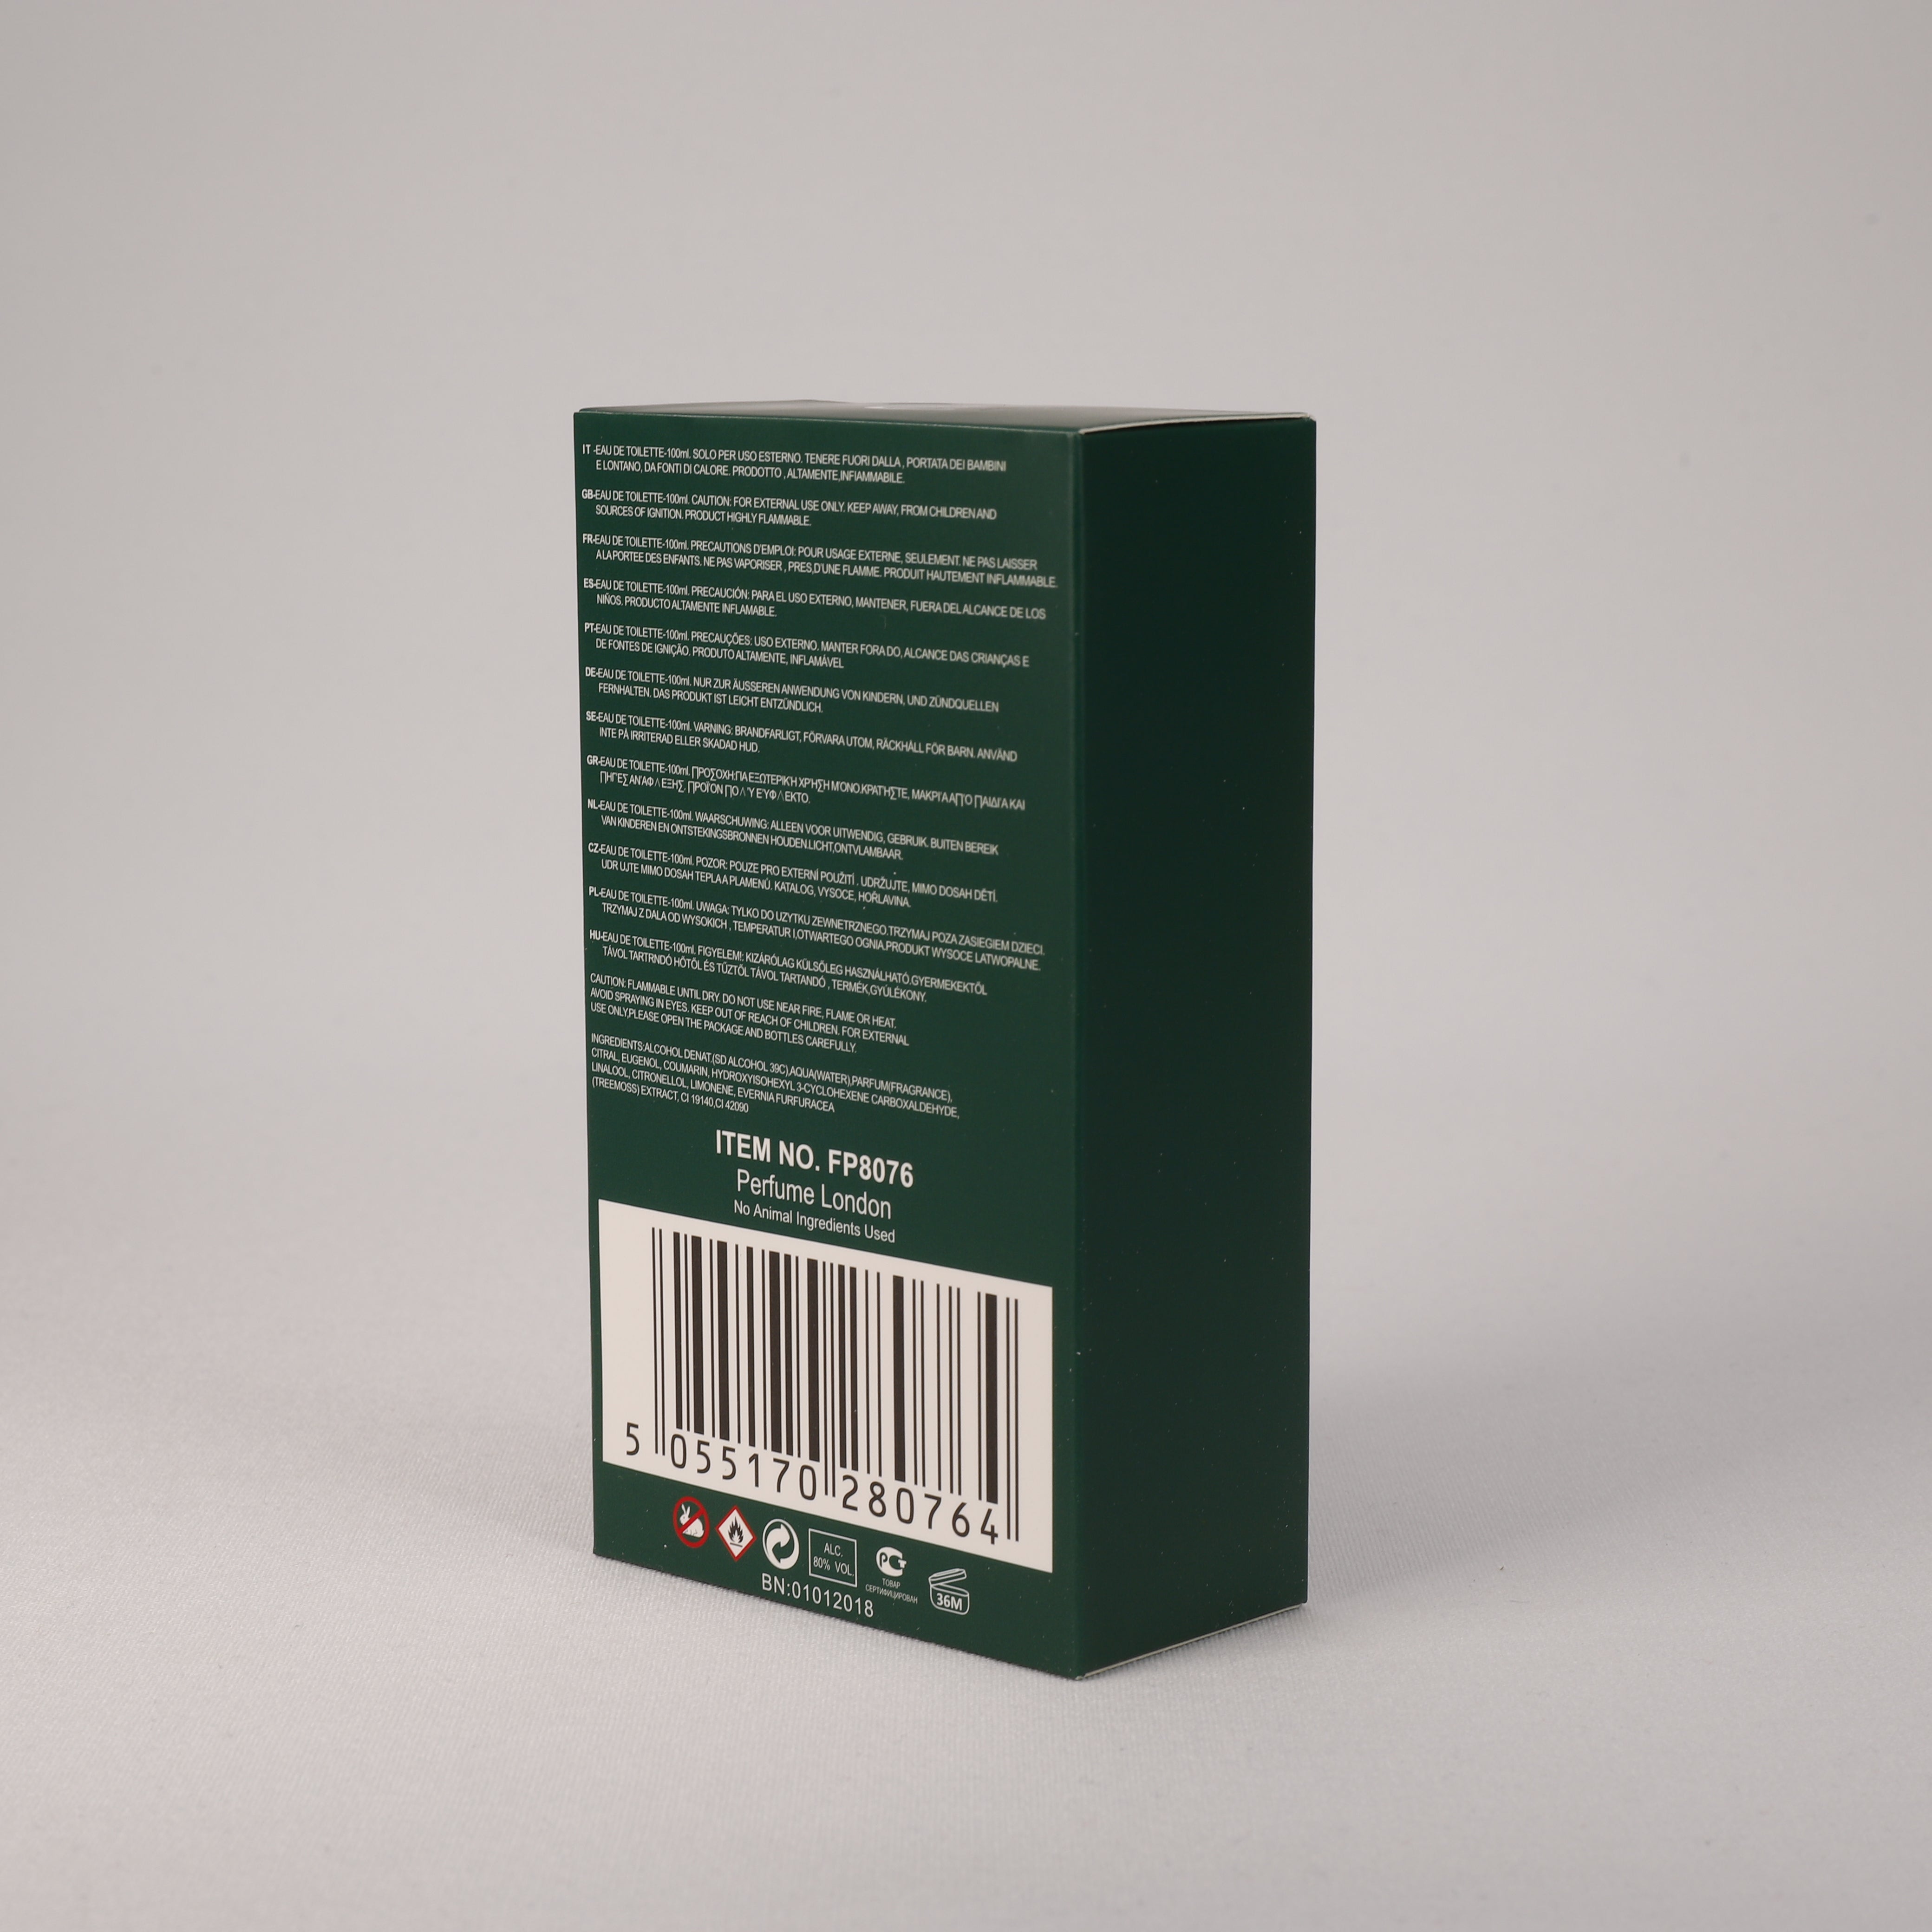 Hidden Code Green für Herren, Vaporizer mit natürlichem Spray, 100 ml, Duft, TOP Parfüm, NEU OVP